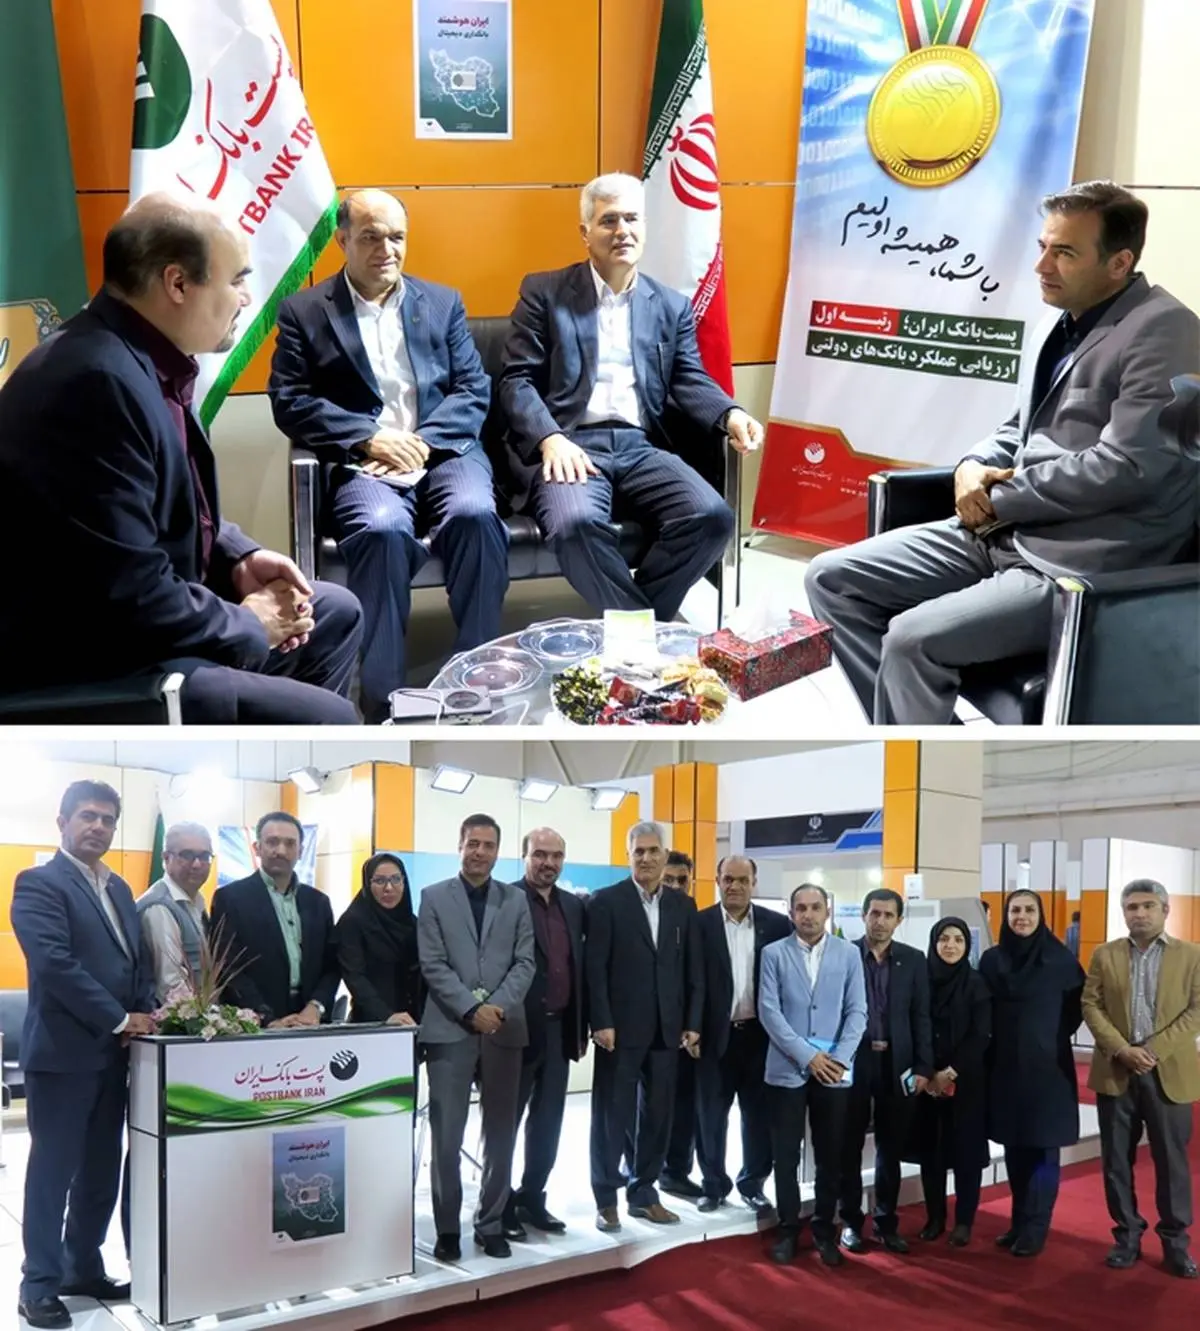 تاکید دکترشیری مدیرعامل پست بانک ایران بر معرفی هدفمند اقدامات بانک در نمایشگاه ها
